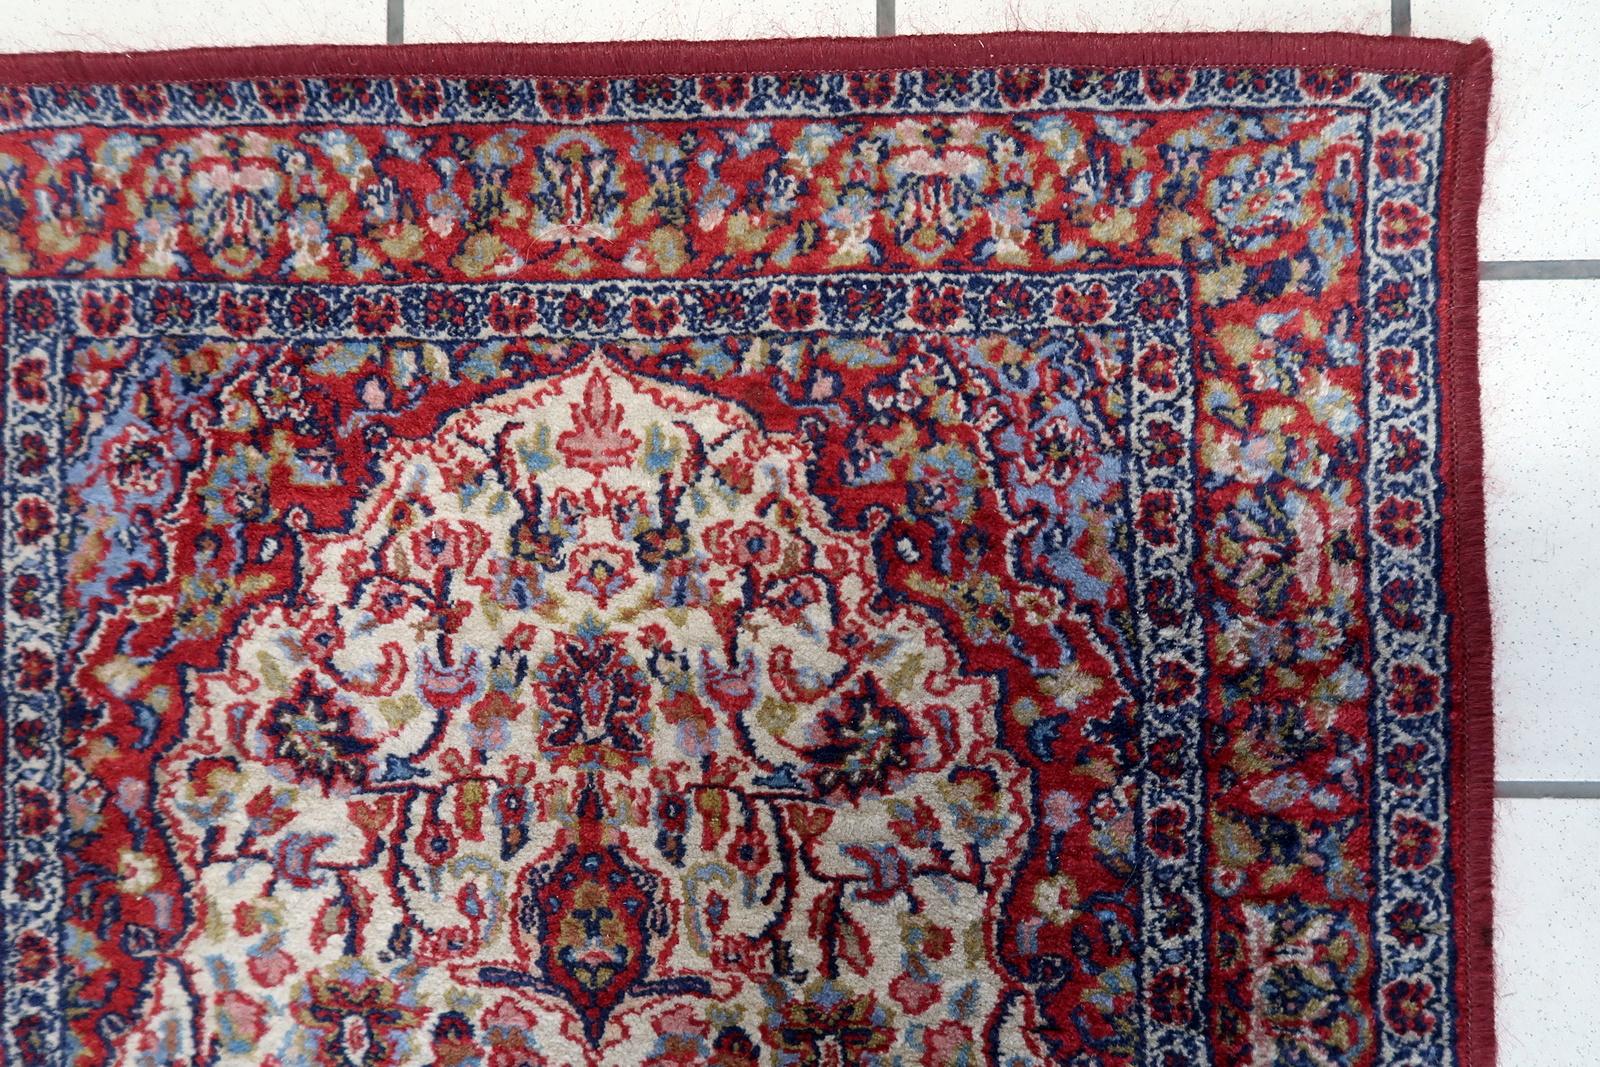 Vintage Indianer-Teppich:

Abmessungen: Dieser sorgfältig gefertigte Teppich misst 2,1' x 3,9' (67cm x 120cm) und eignet sich daher für kleinere Räume oder als Akzentstück.
Kunstfertigkeit: Dieser aus den 1970er Jahren stammende Teppich zeigt die